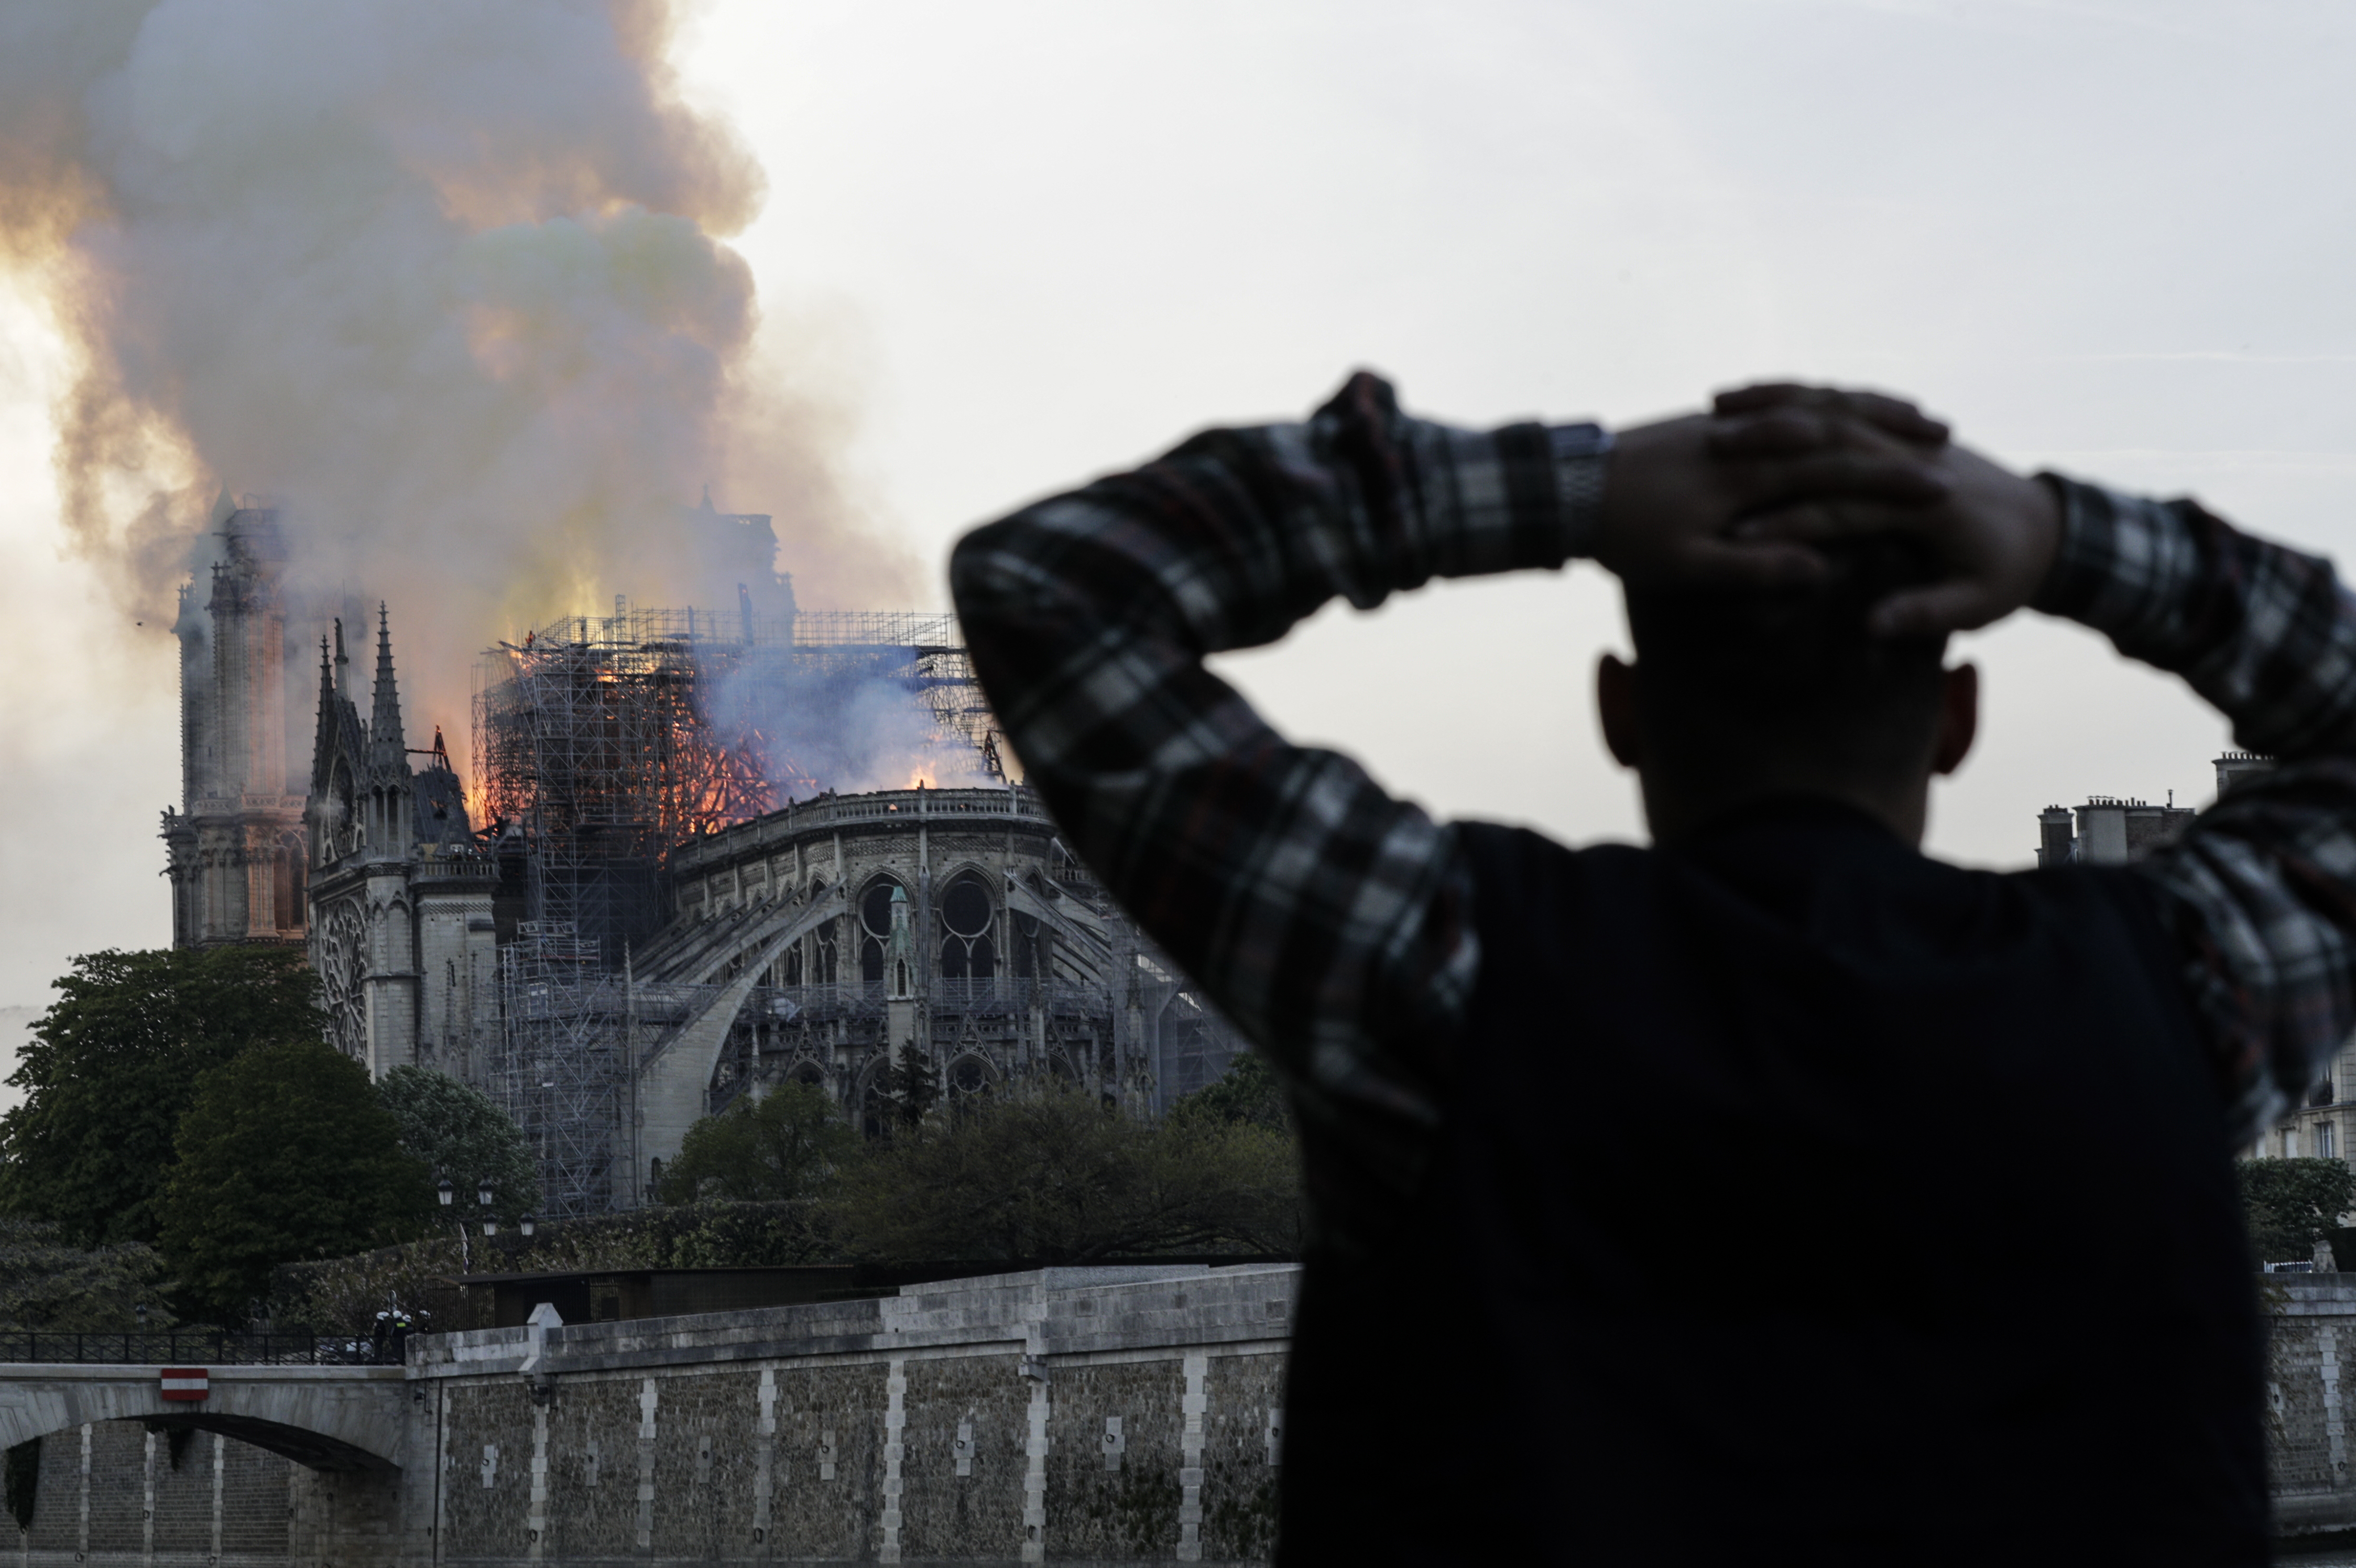 EN FOTOS: El mundo ve con espanto el incendio en la catedral de Notre Dame